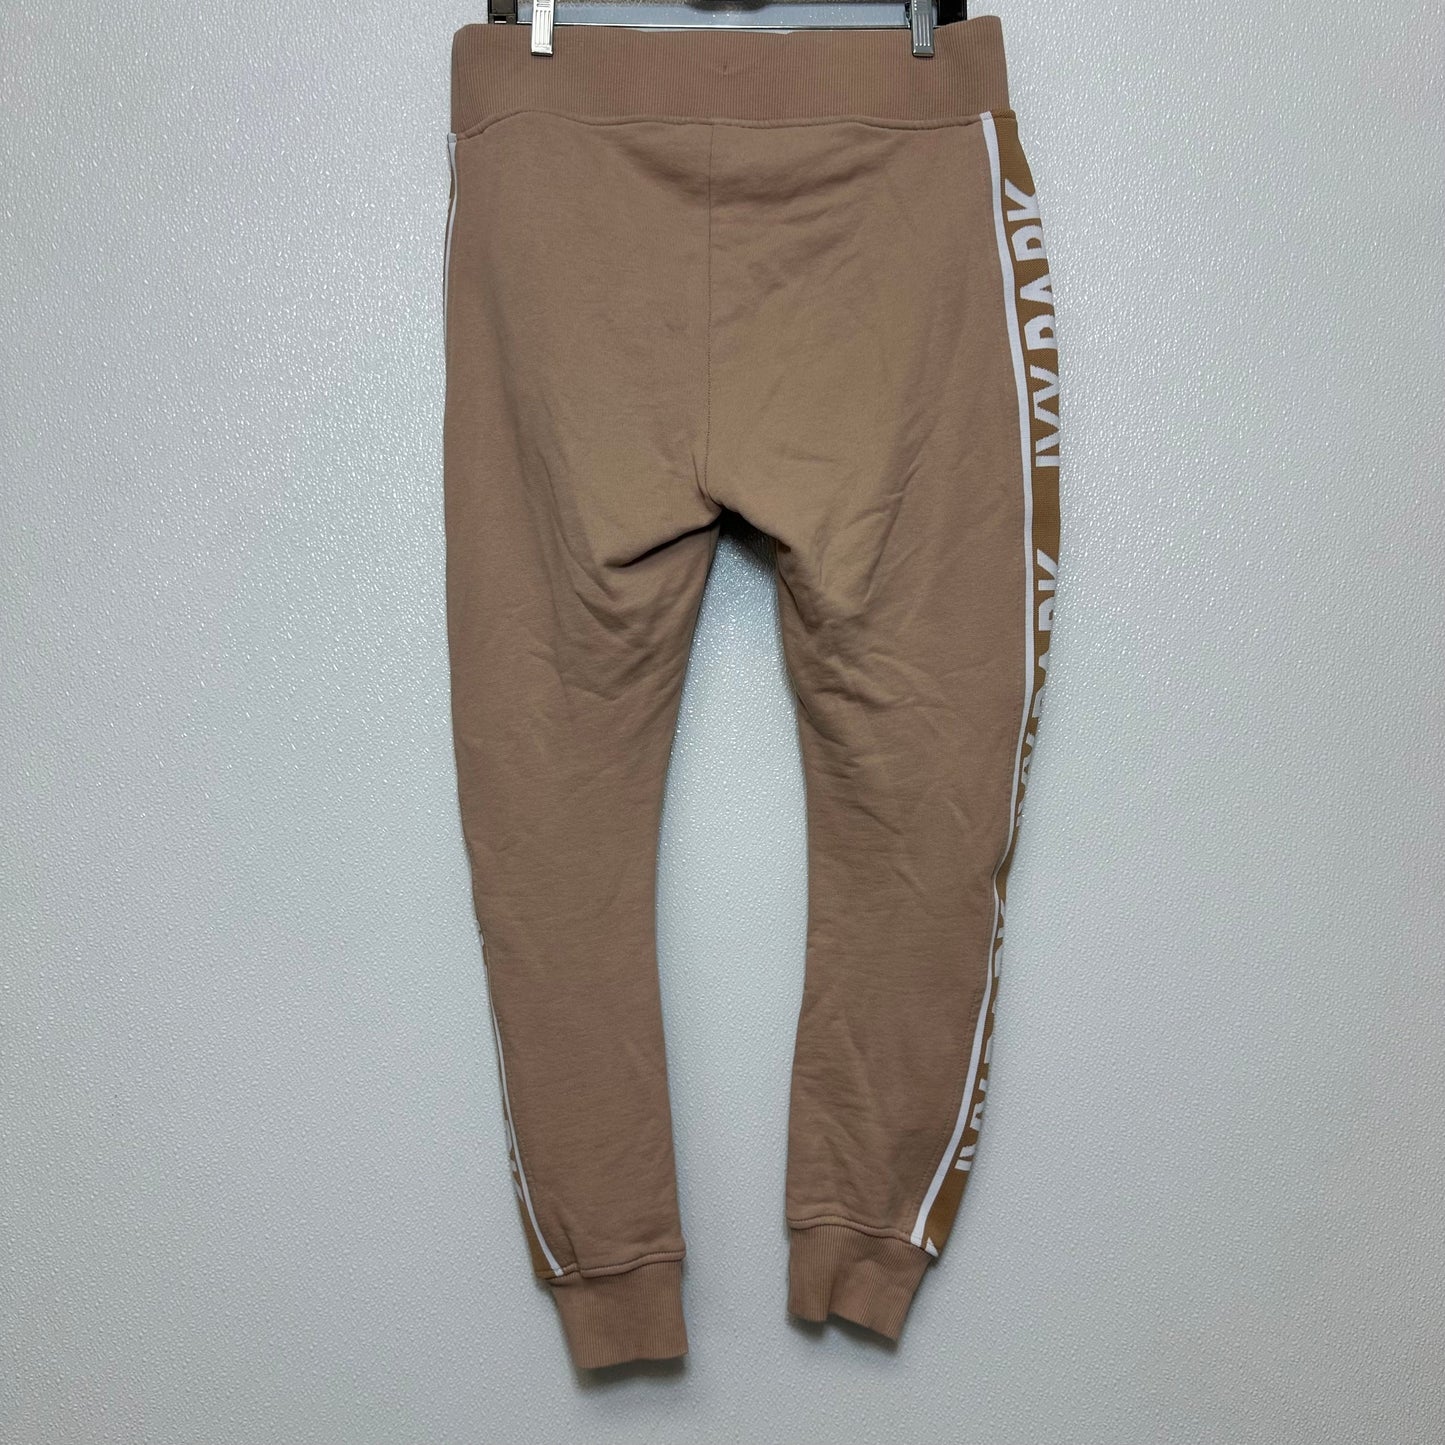 Pants Sweatpants By Ivy Park  Size: S